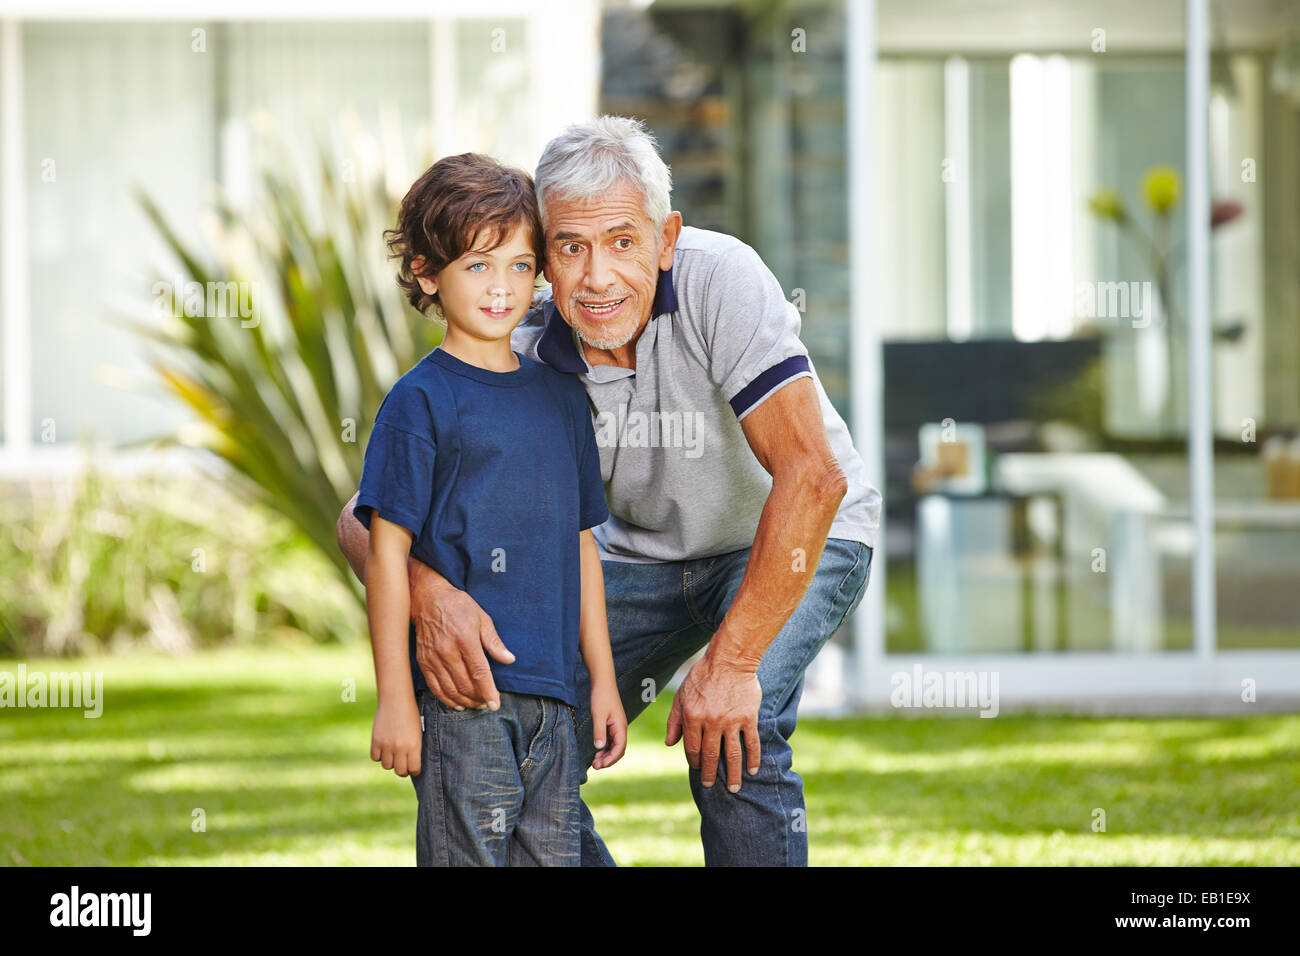 Heureux grand-père parler avec son petit-fils dans un jardin d'été Banque D'Images